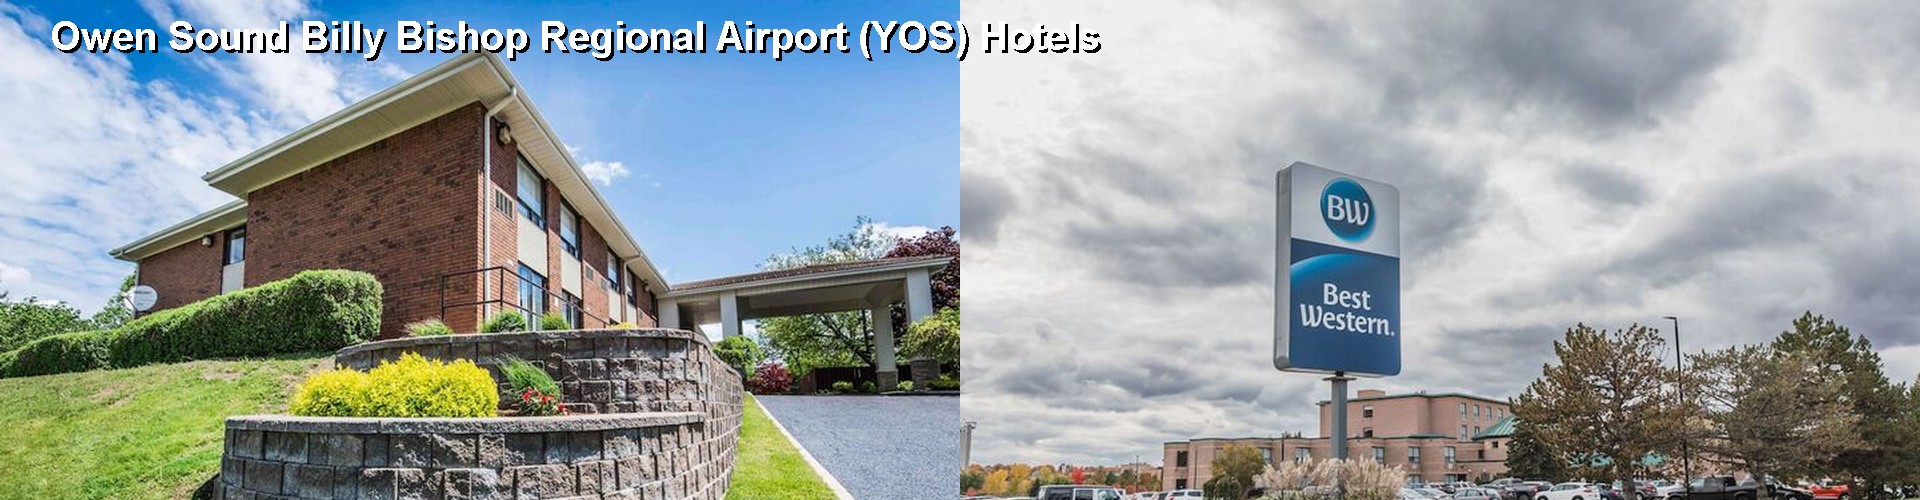 5 Best Hotels near Owen Sound Billy Bishop Regional Airport (YOS)